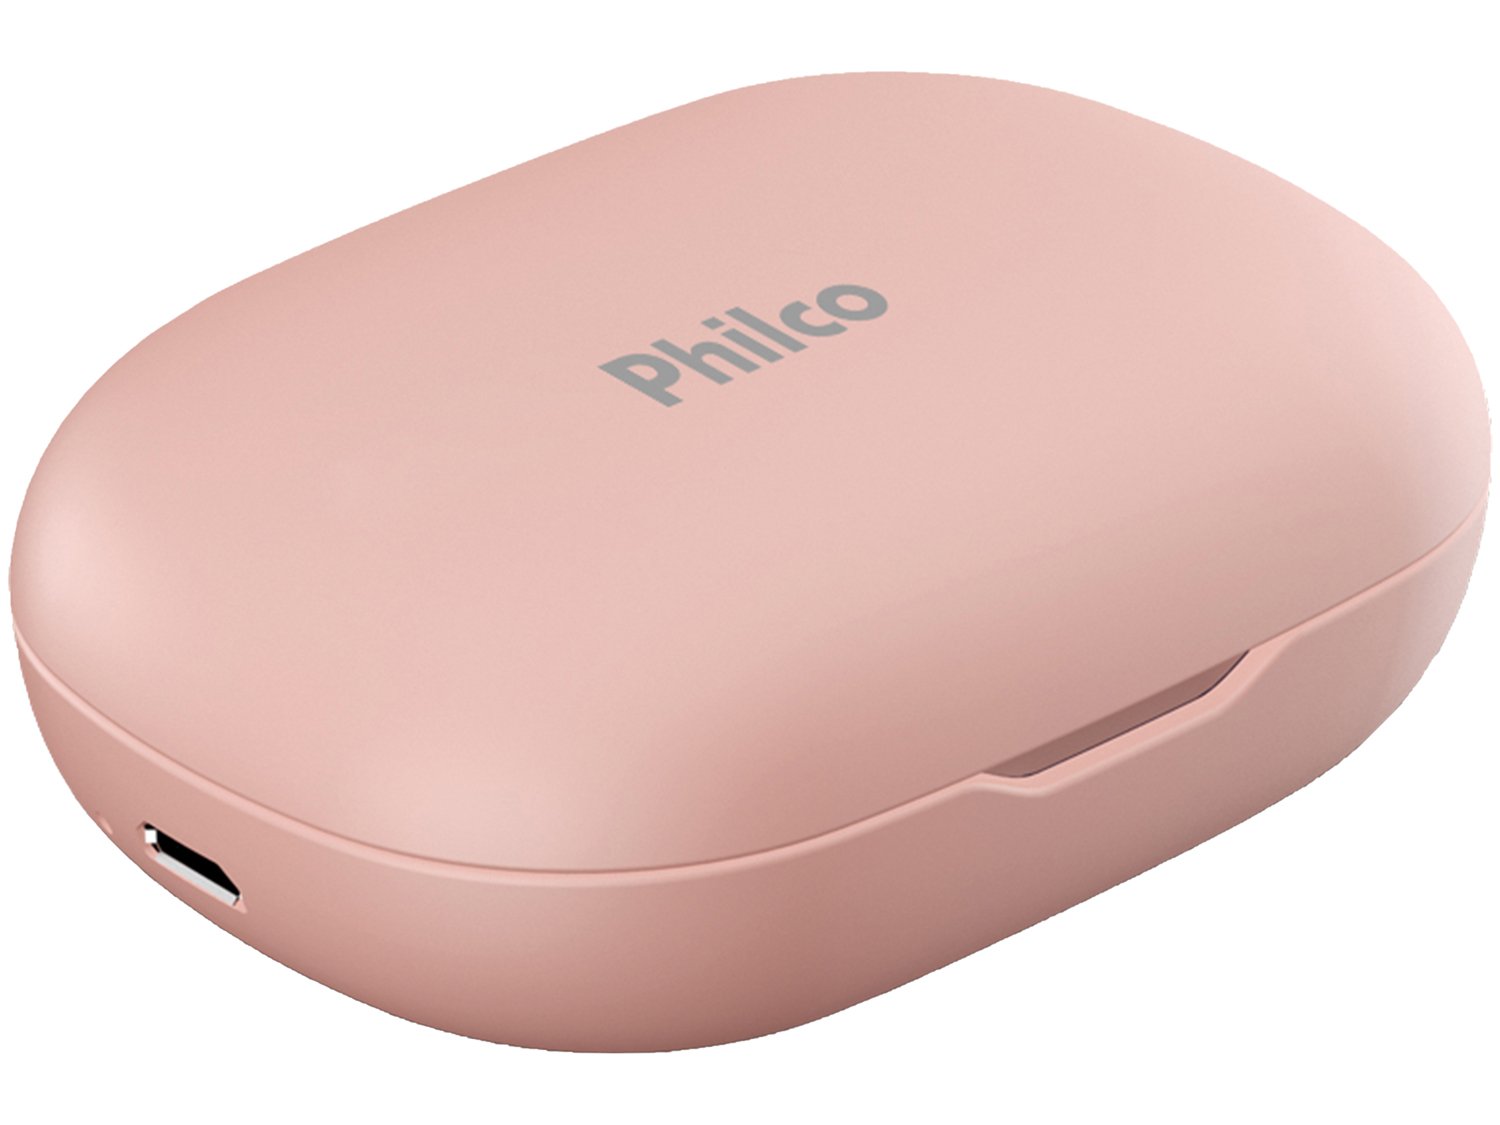 Fone de Ouvido Bluetooth Philco Air Beats PFI96ESR - True Wireless com Microfone Resistente à Água Rosa - Bivolt - 2